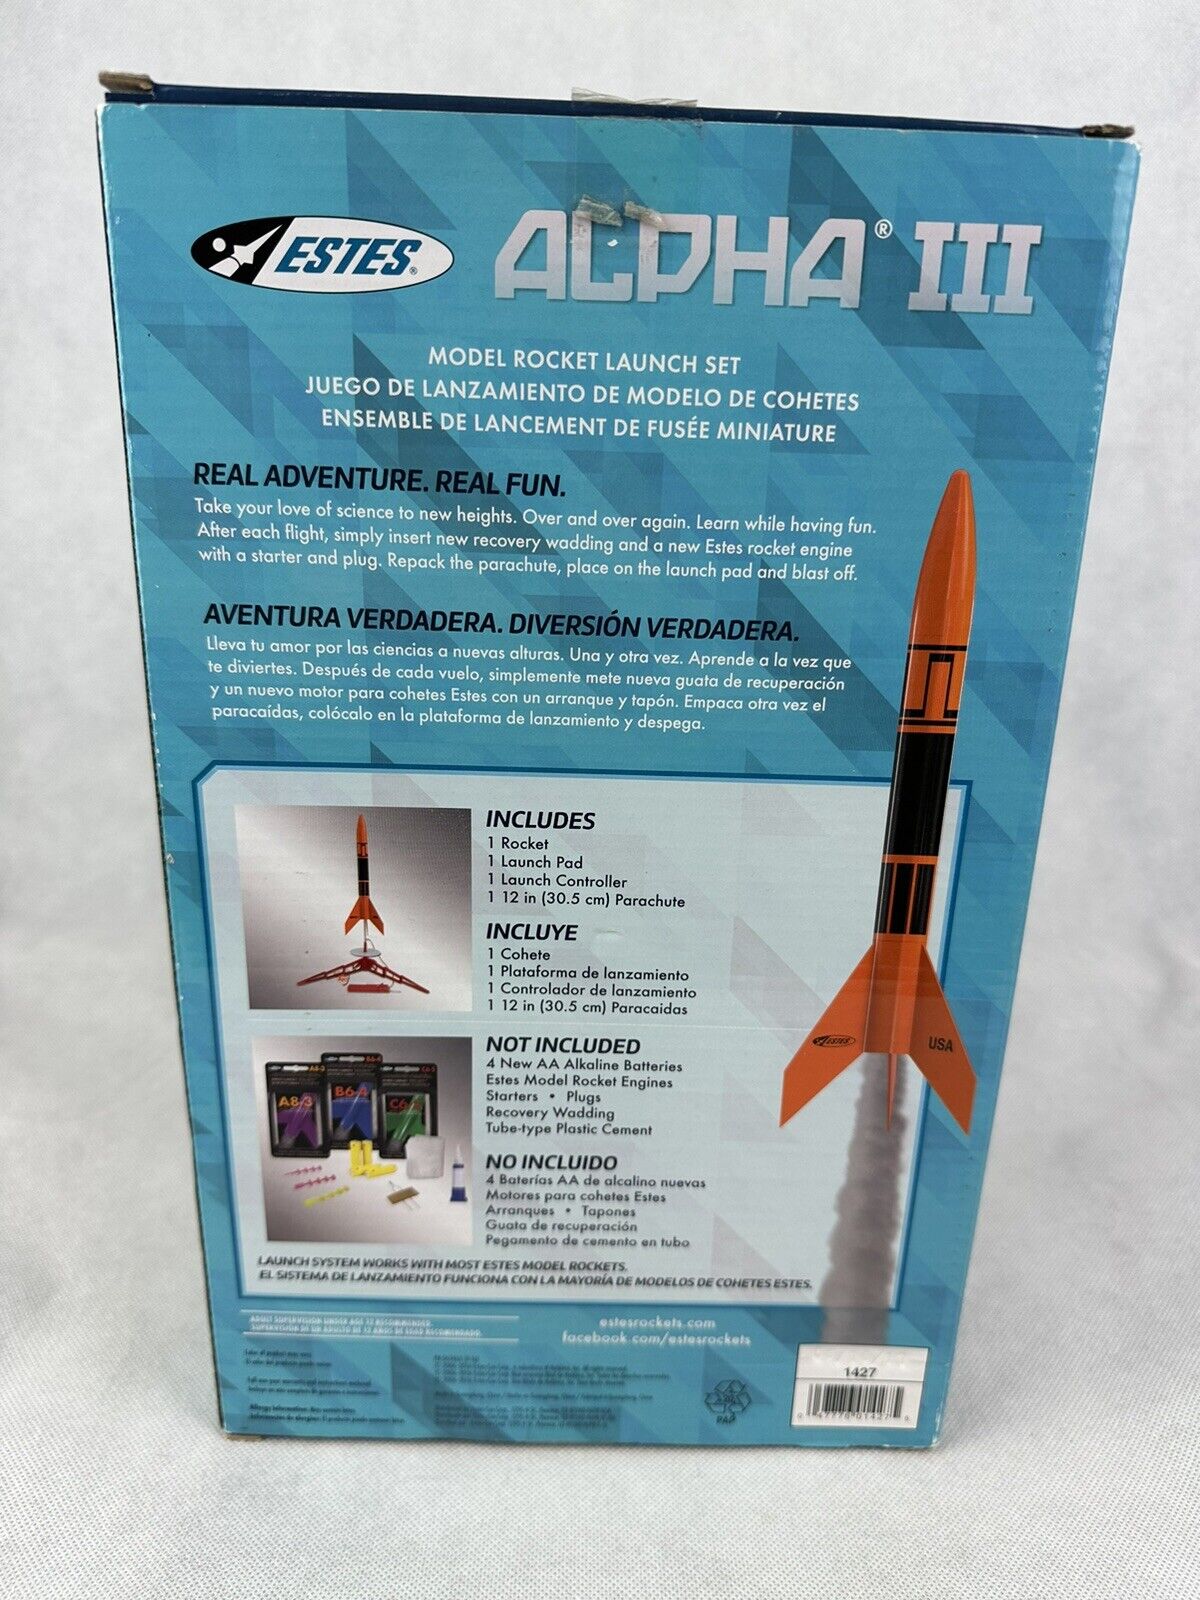 Estes Alpha III Flying Model Rocket Launch Set 1427 New Open Box Estes Rockets 451212 - фотография #3